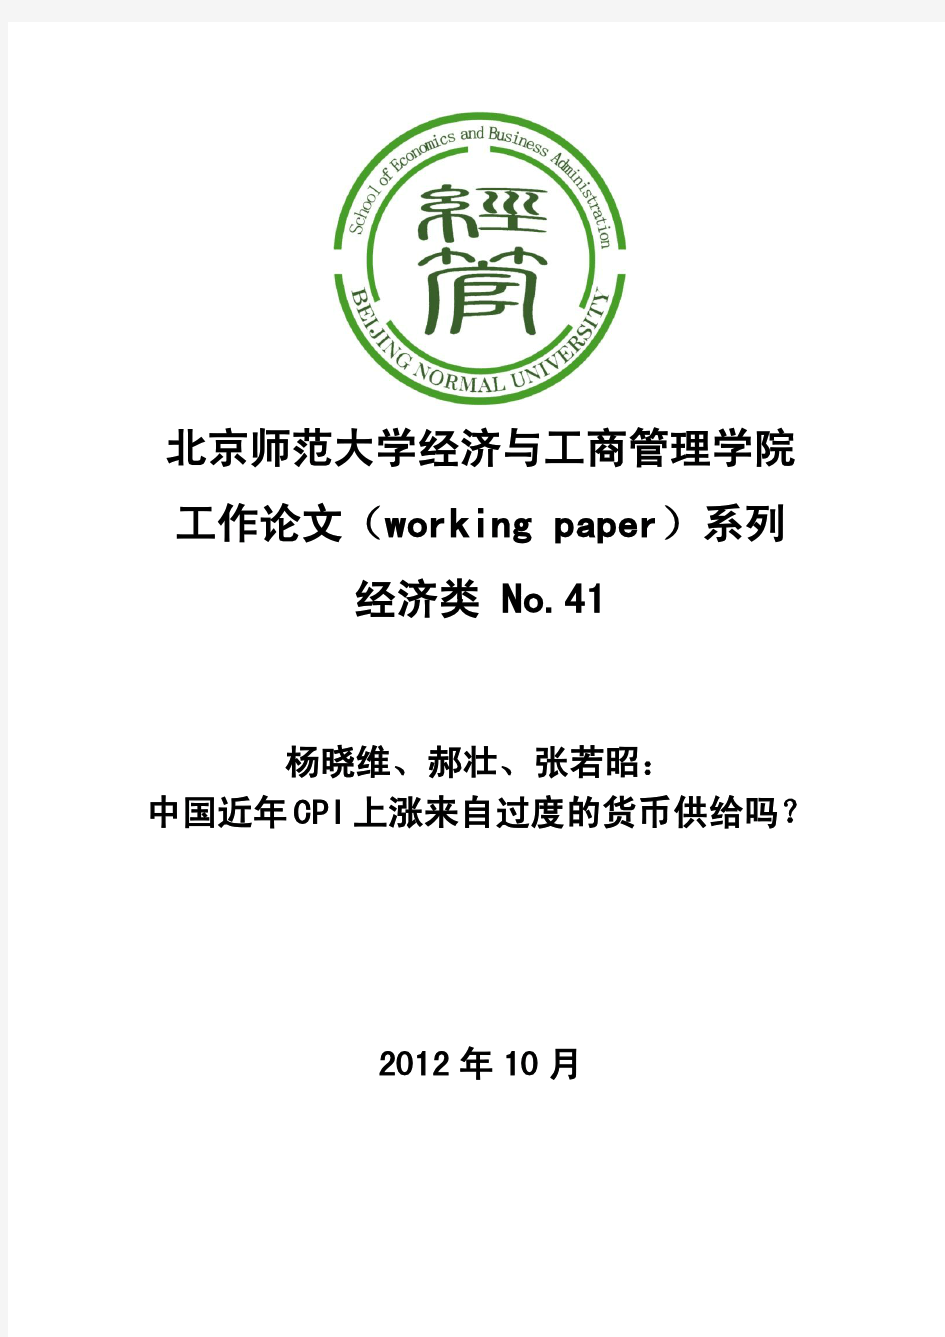 北京师范大学经济与工商管理学院 工作论文(working paper